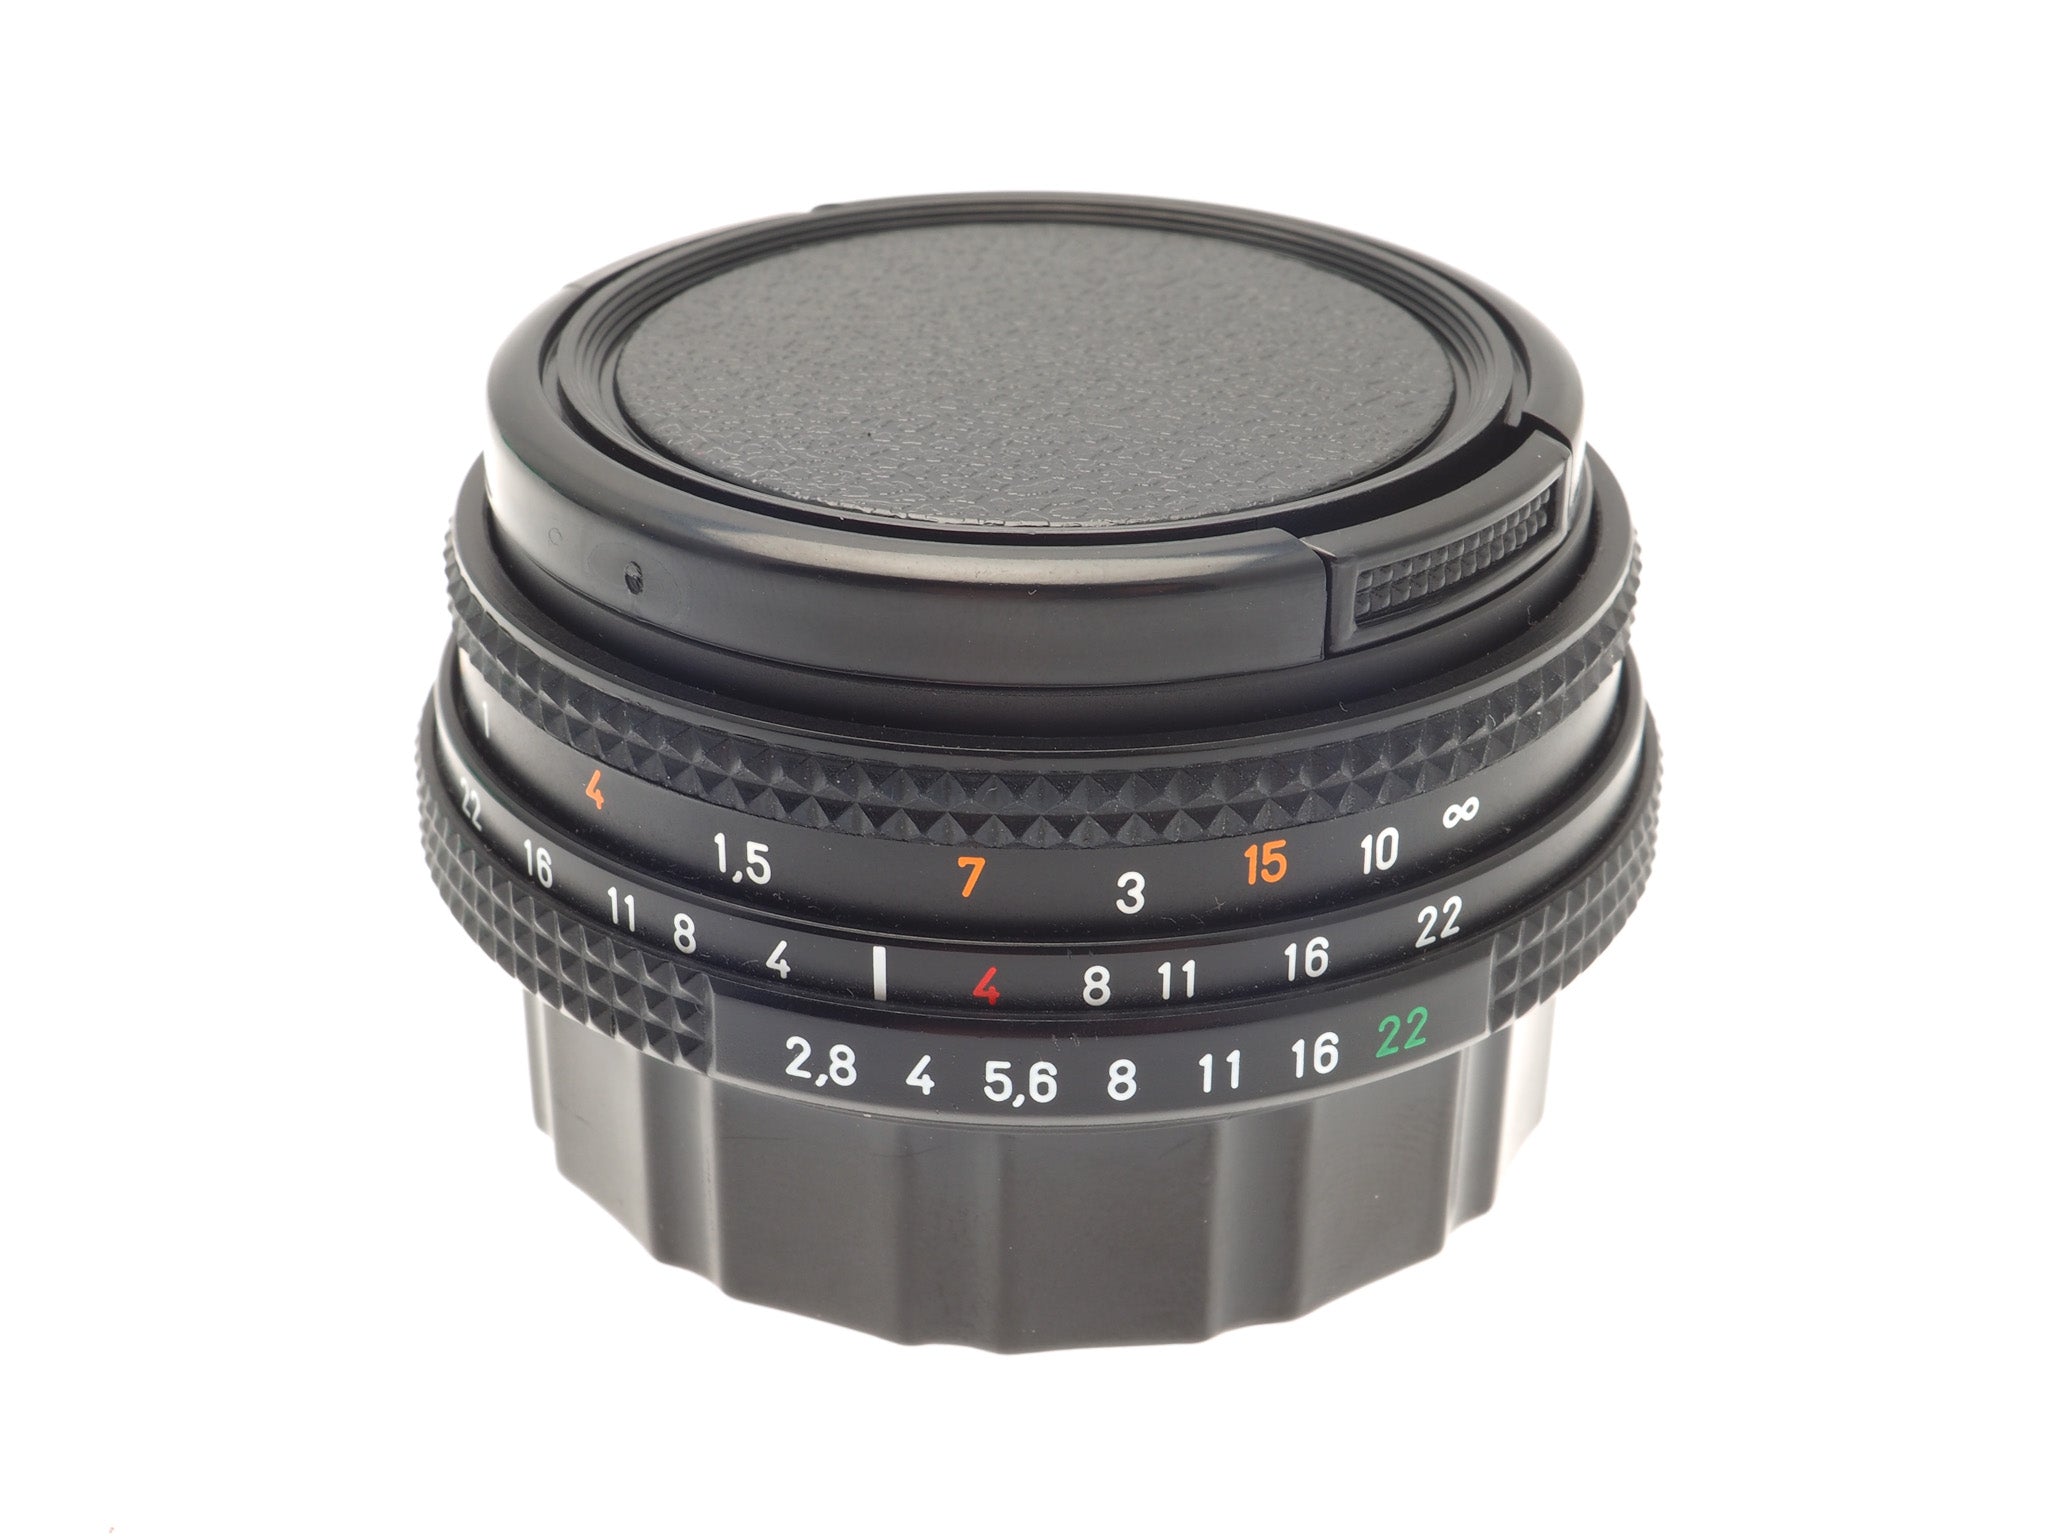 Carl Zeiss 45mm f2.8 Tessar T* - Lens